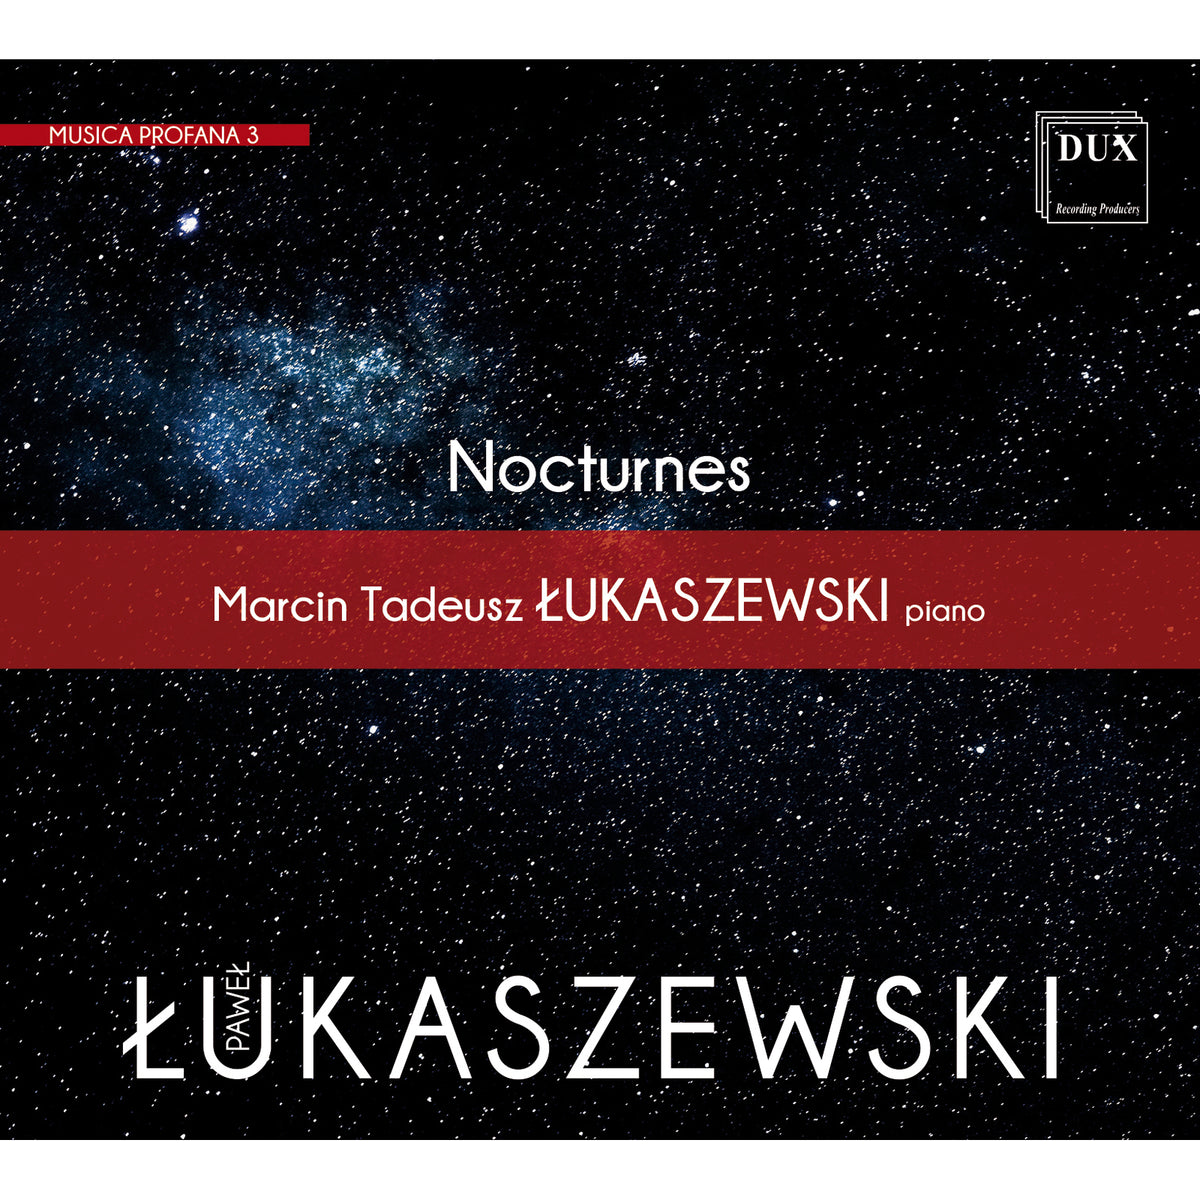 Marcin Tadeusz Lukaszewski - Pawel Lukaszewski: Musica Profana 3 - DUX1982